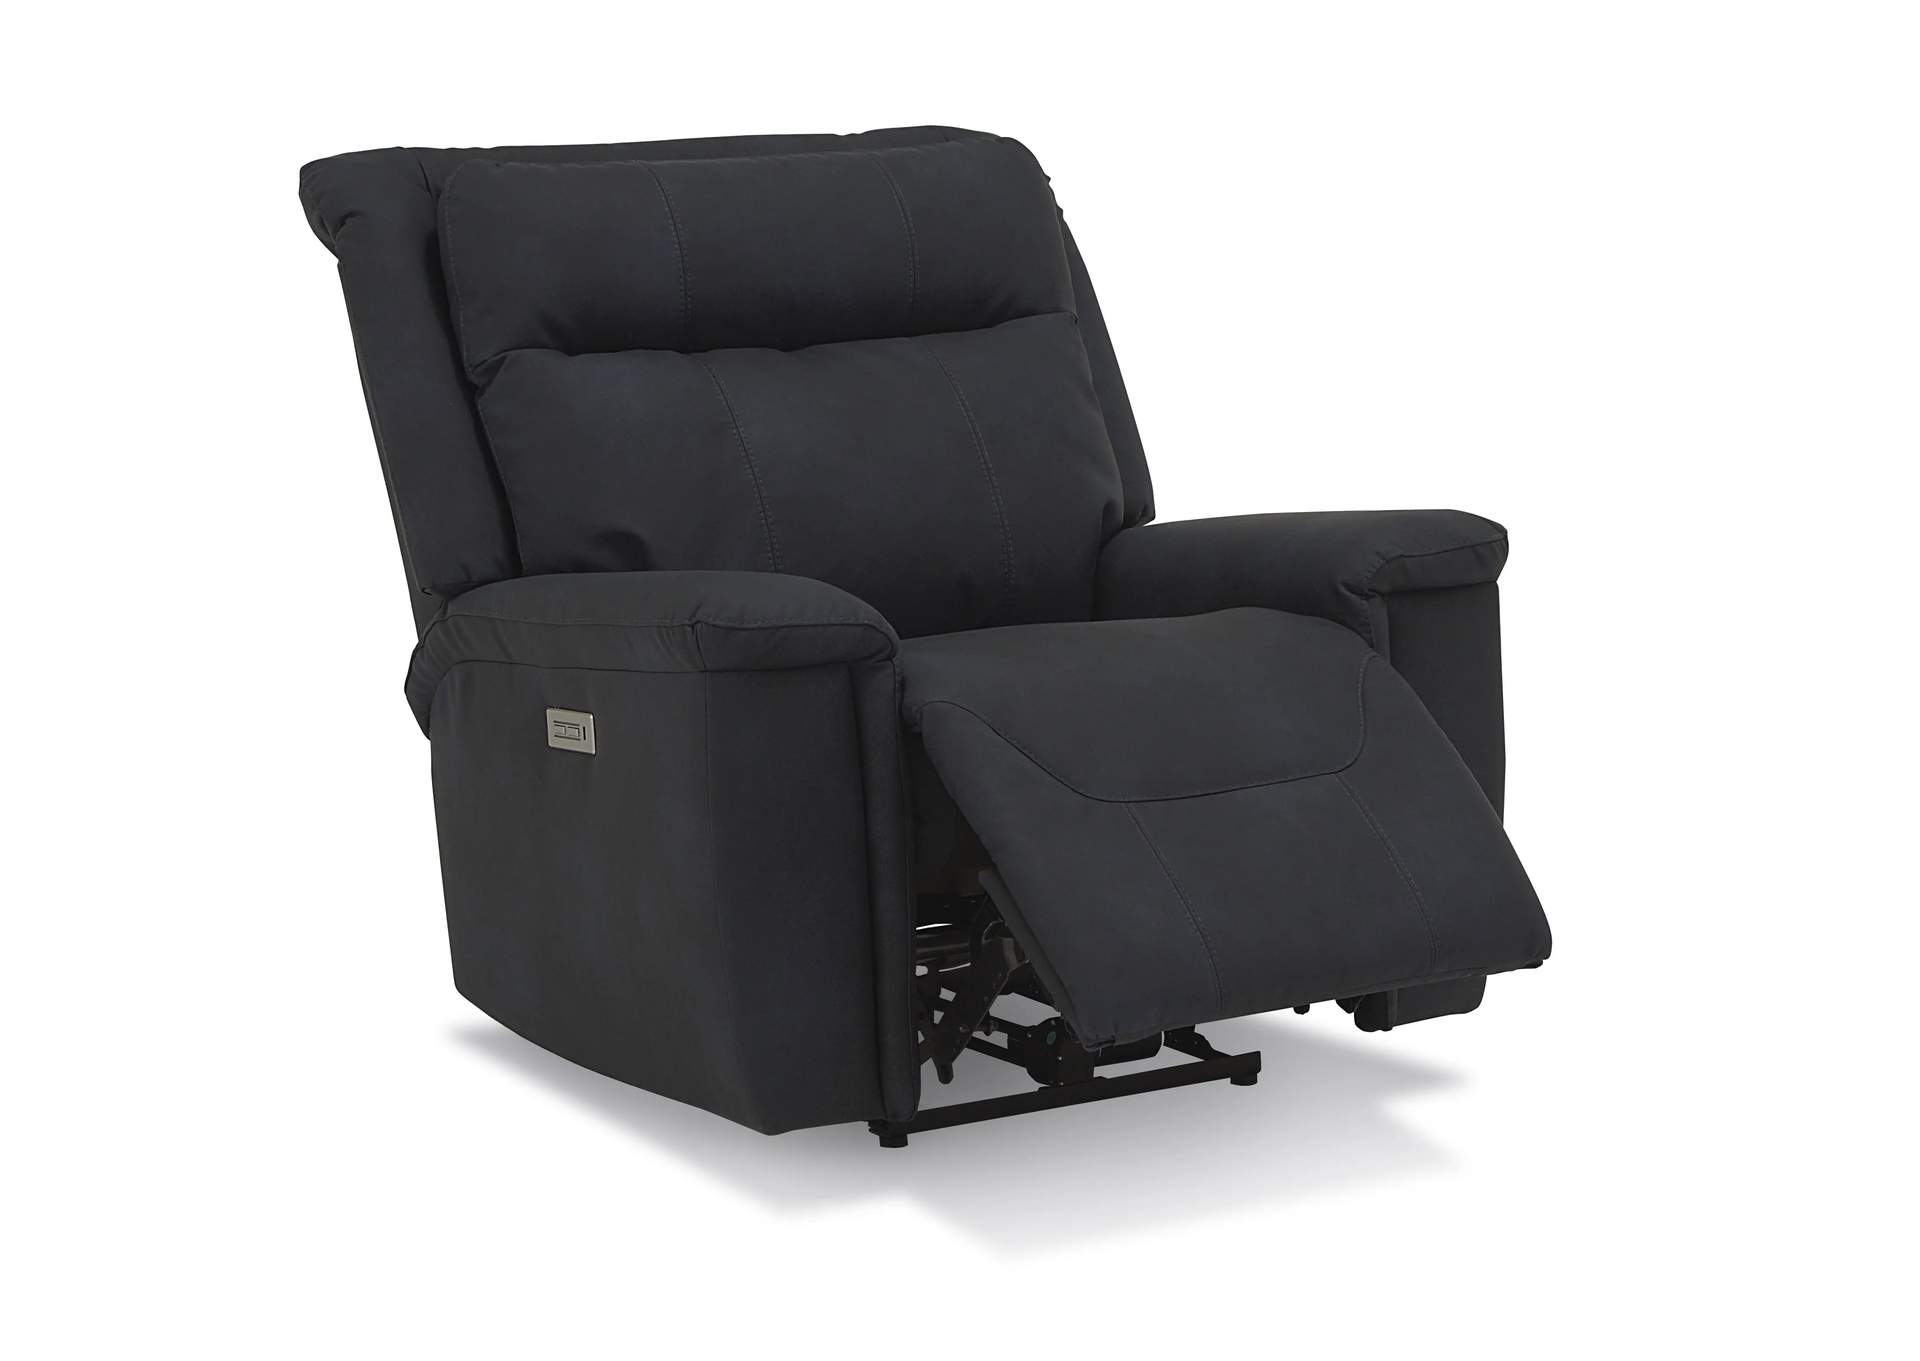 Strata Chair Rocker Recliner,Palliser Furniture